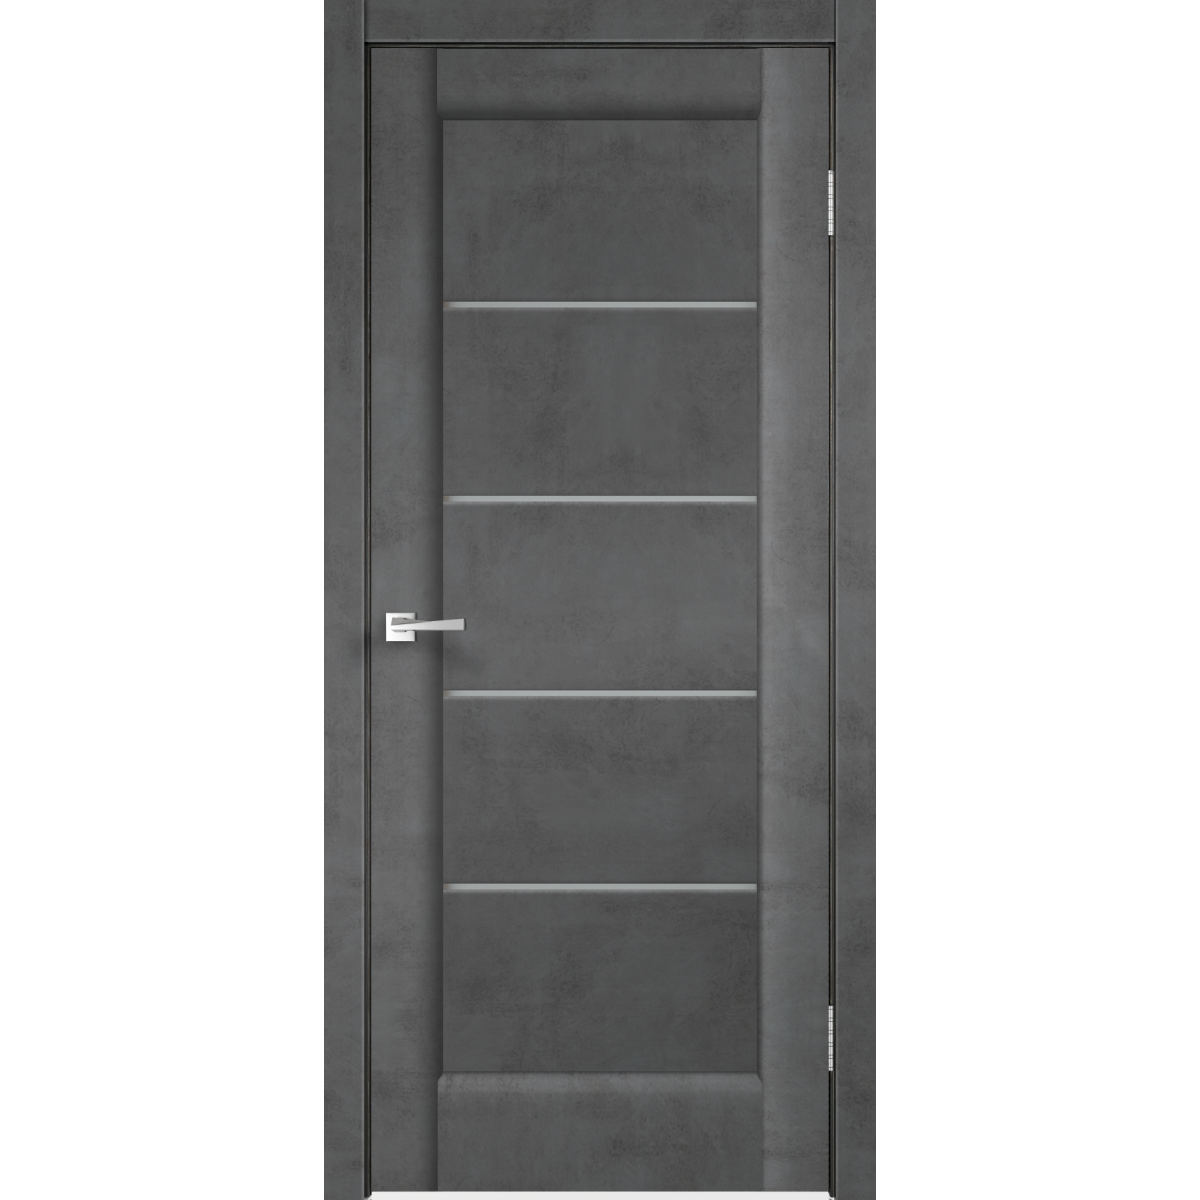 Дверь межкомнатная остеклённая «Сохо», 70x200 см, ПВХ, цвет лофт тёмный, с фурнитурой